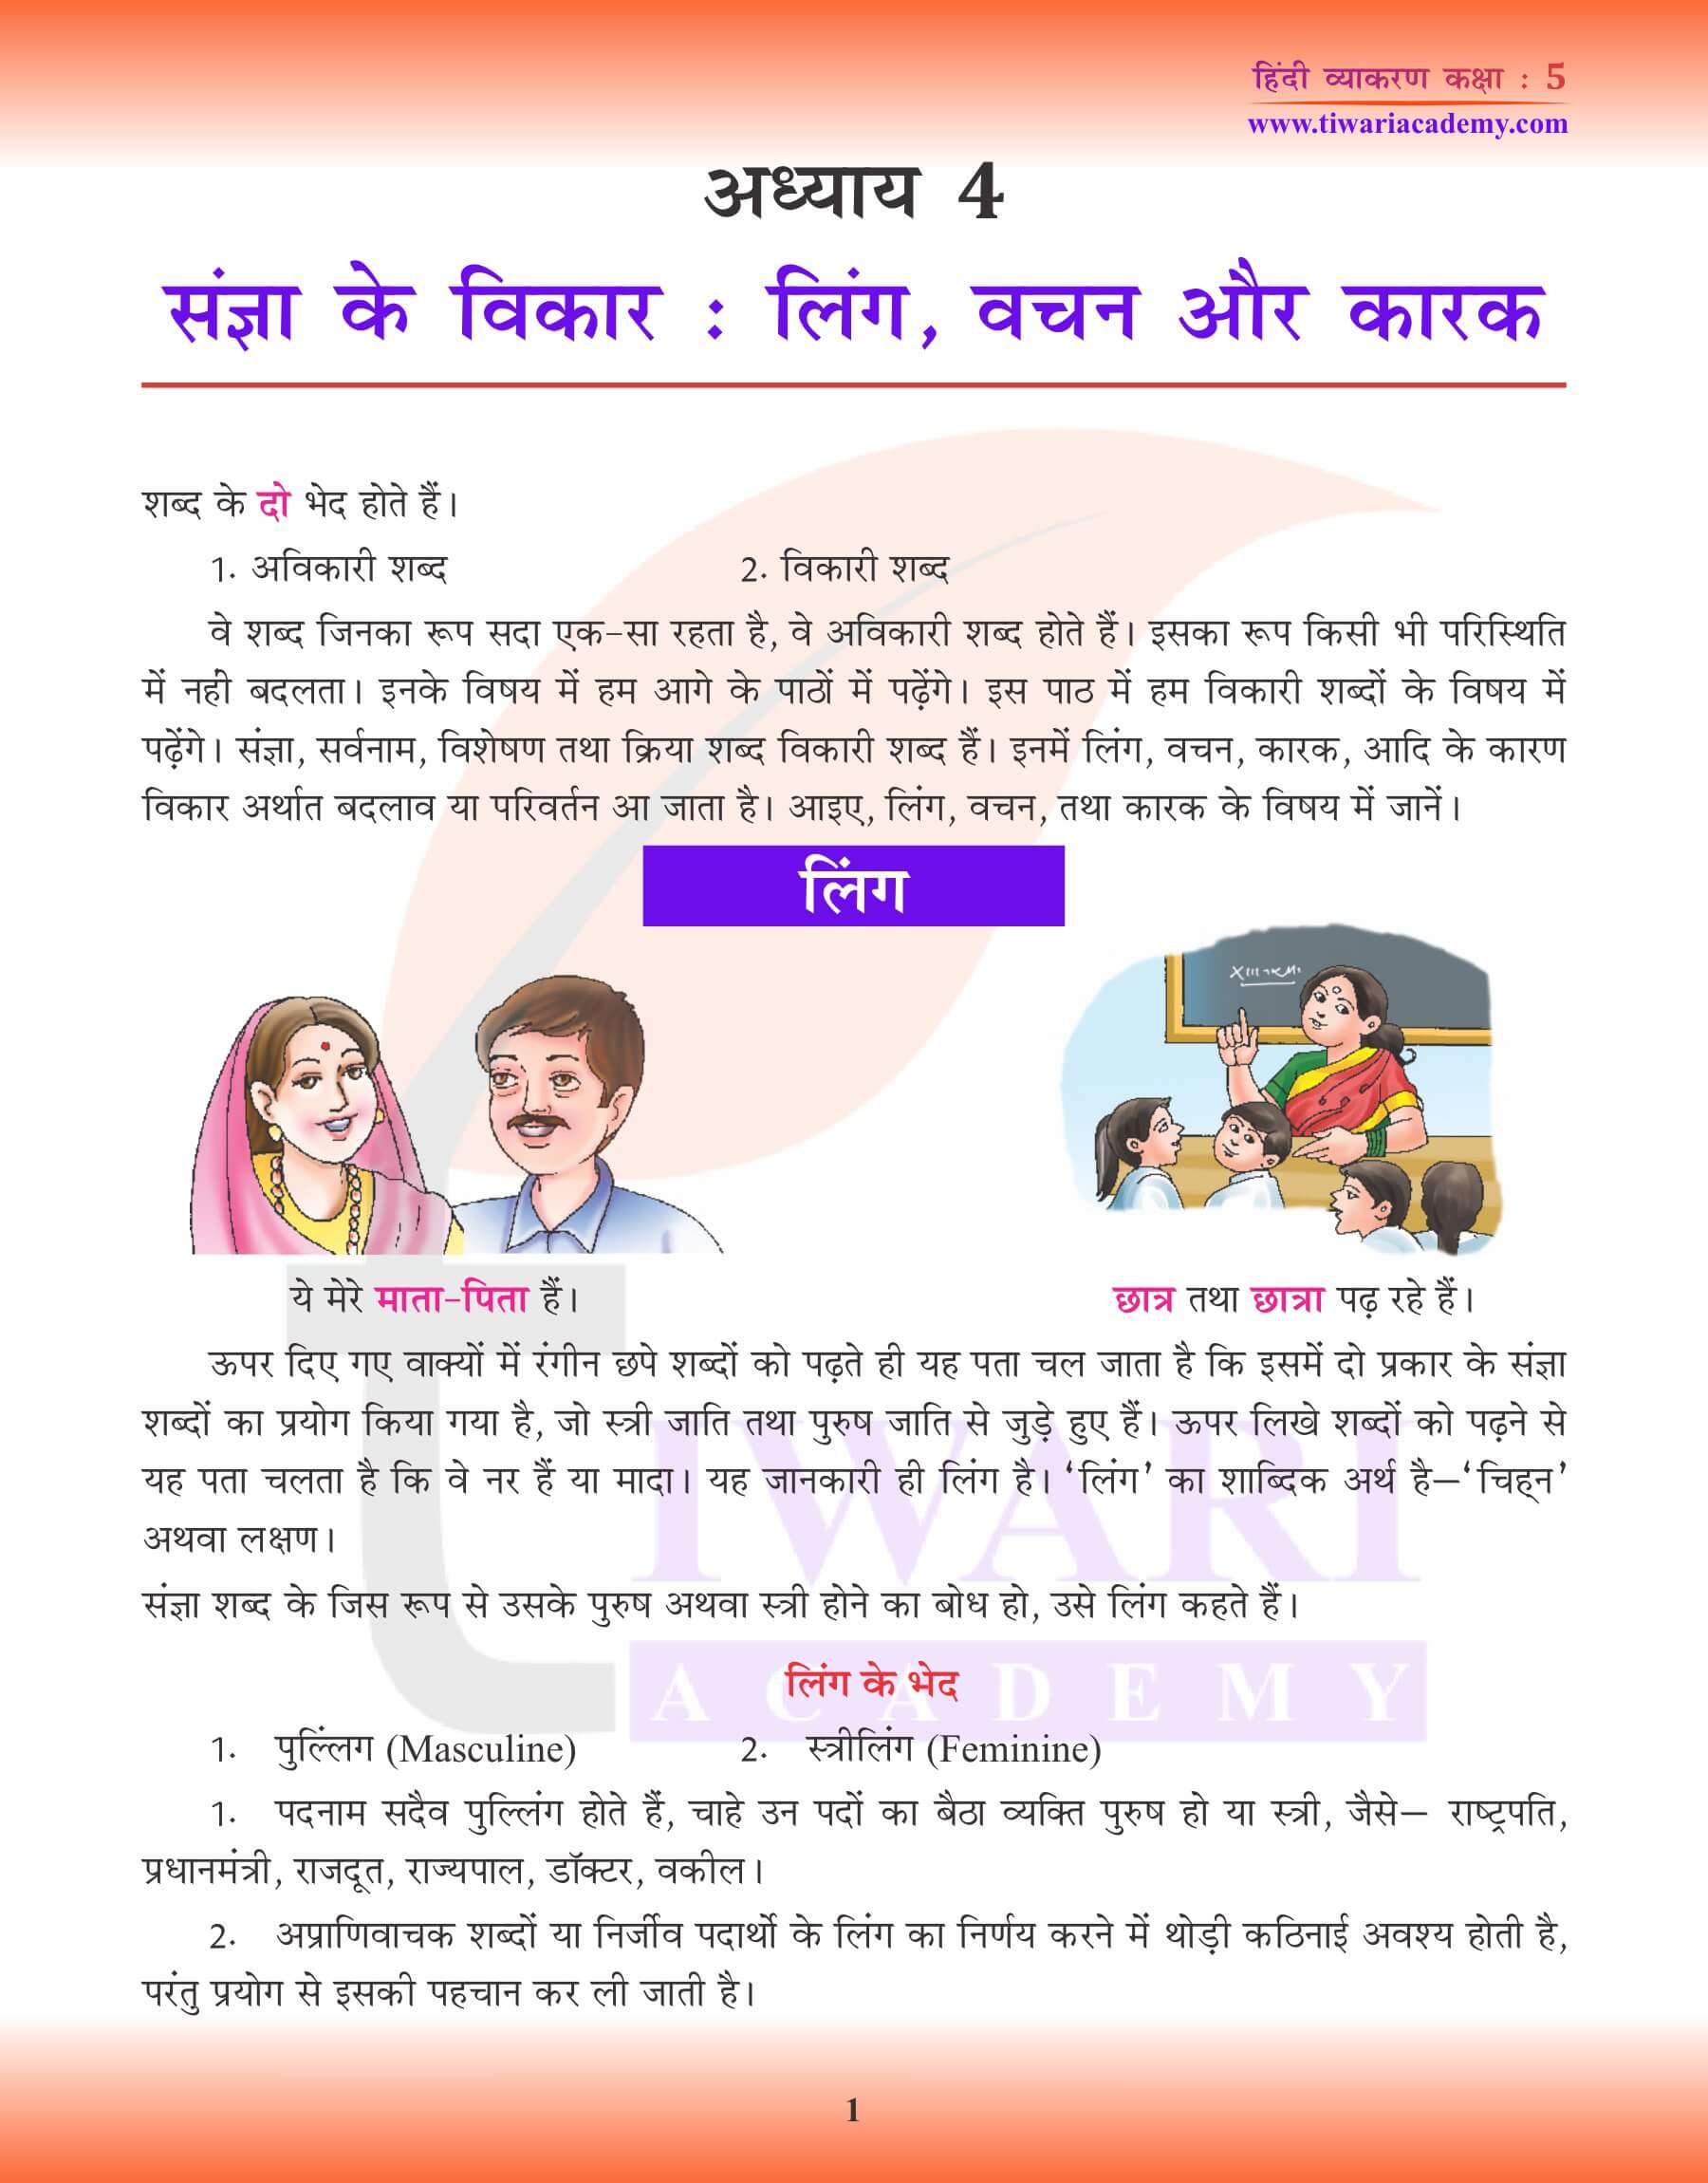 कक्षा 5 हिंदी व्याकरण लिंग, वचन और कारक